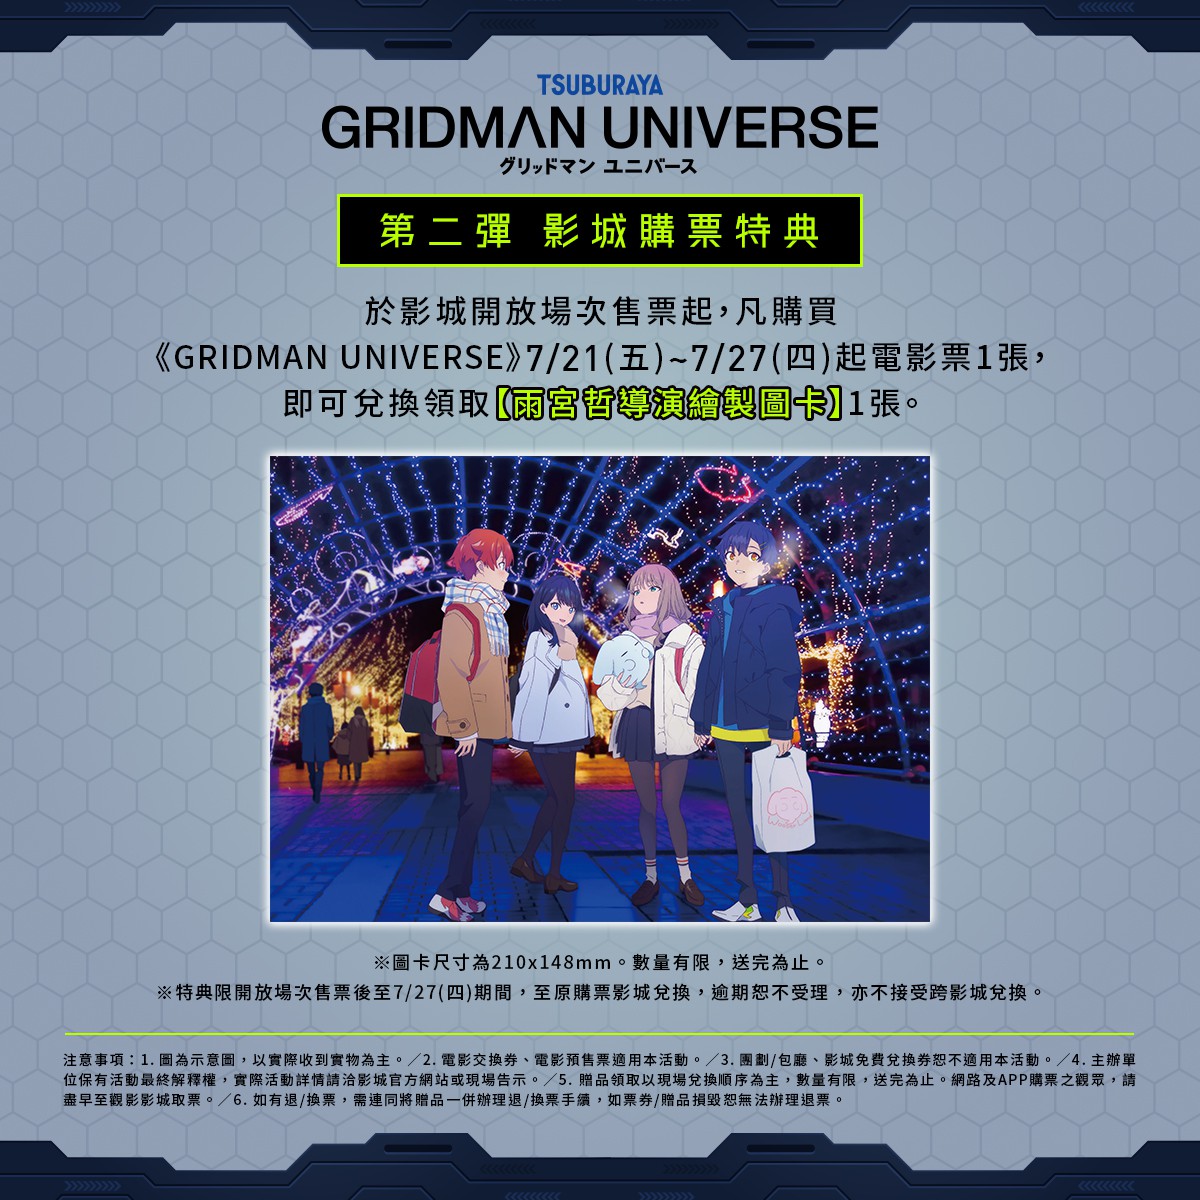 [情報] 《GRIDMAN UNIVERSE》台灣第2周特典